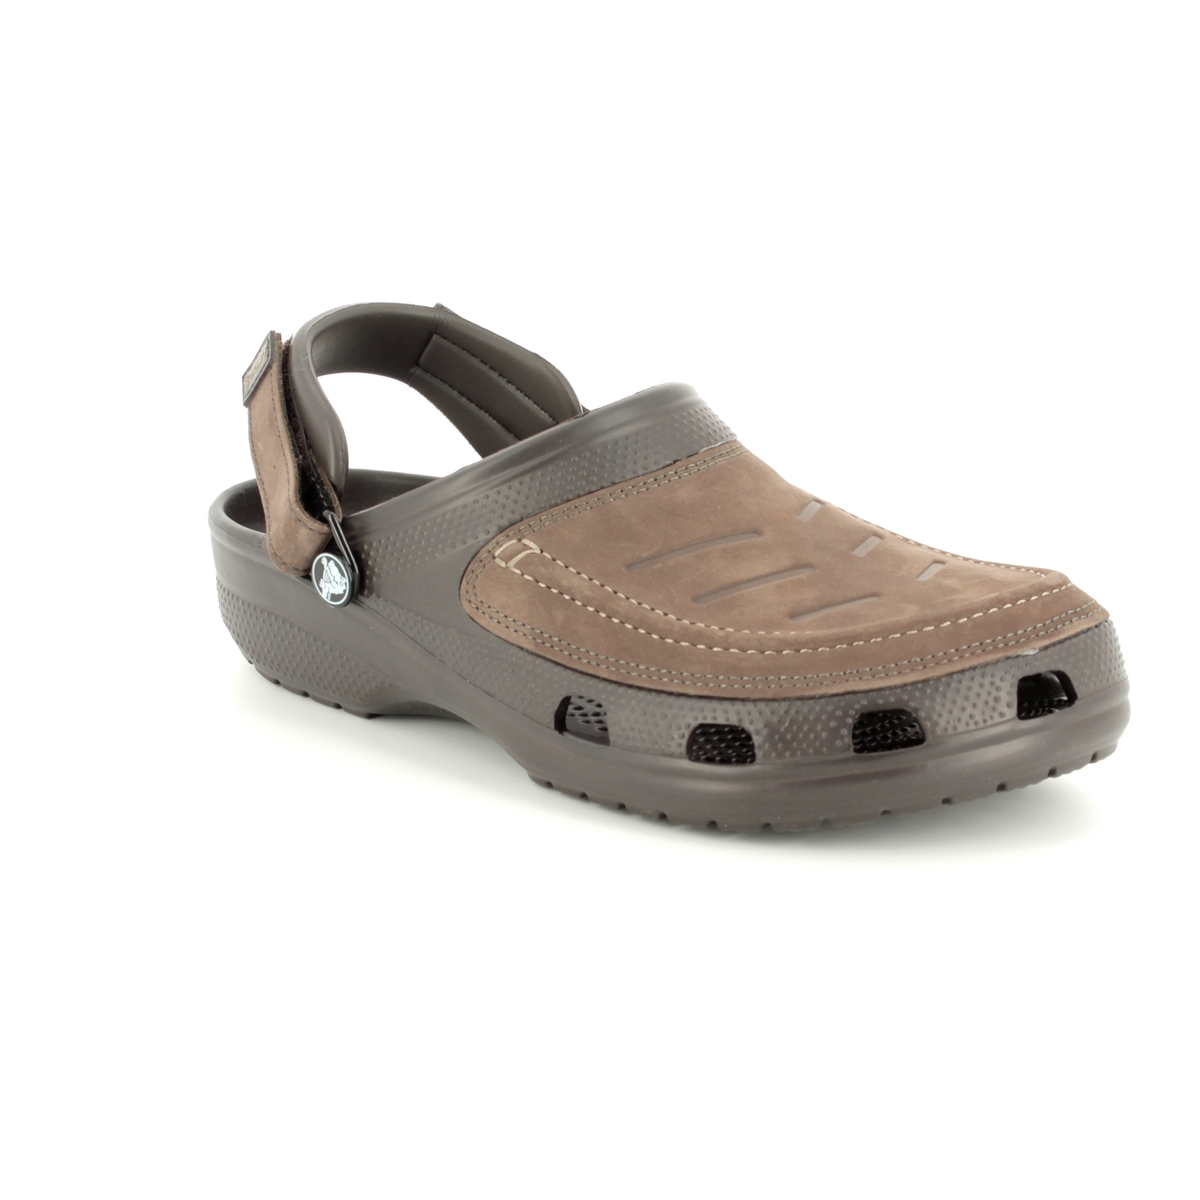 brown croc shoes